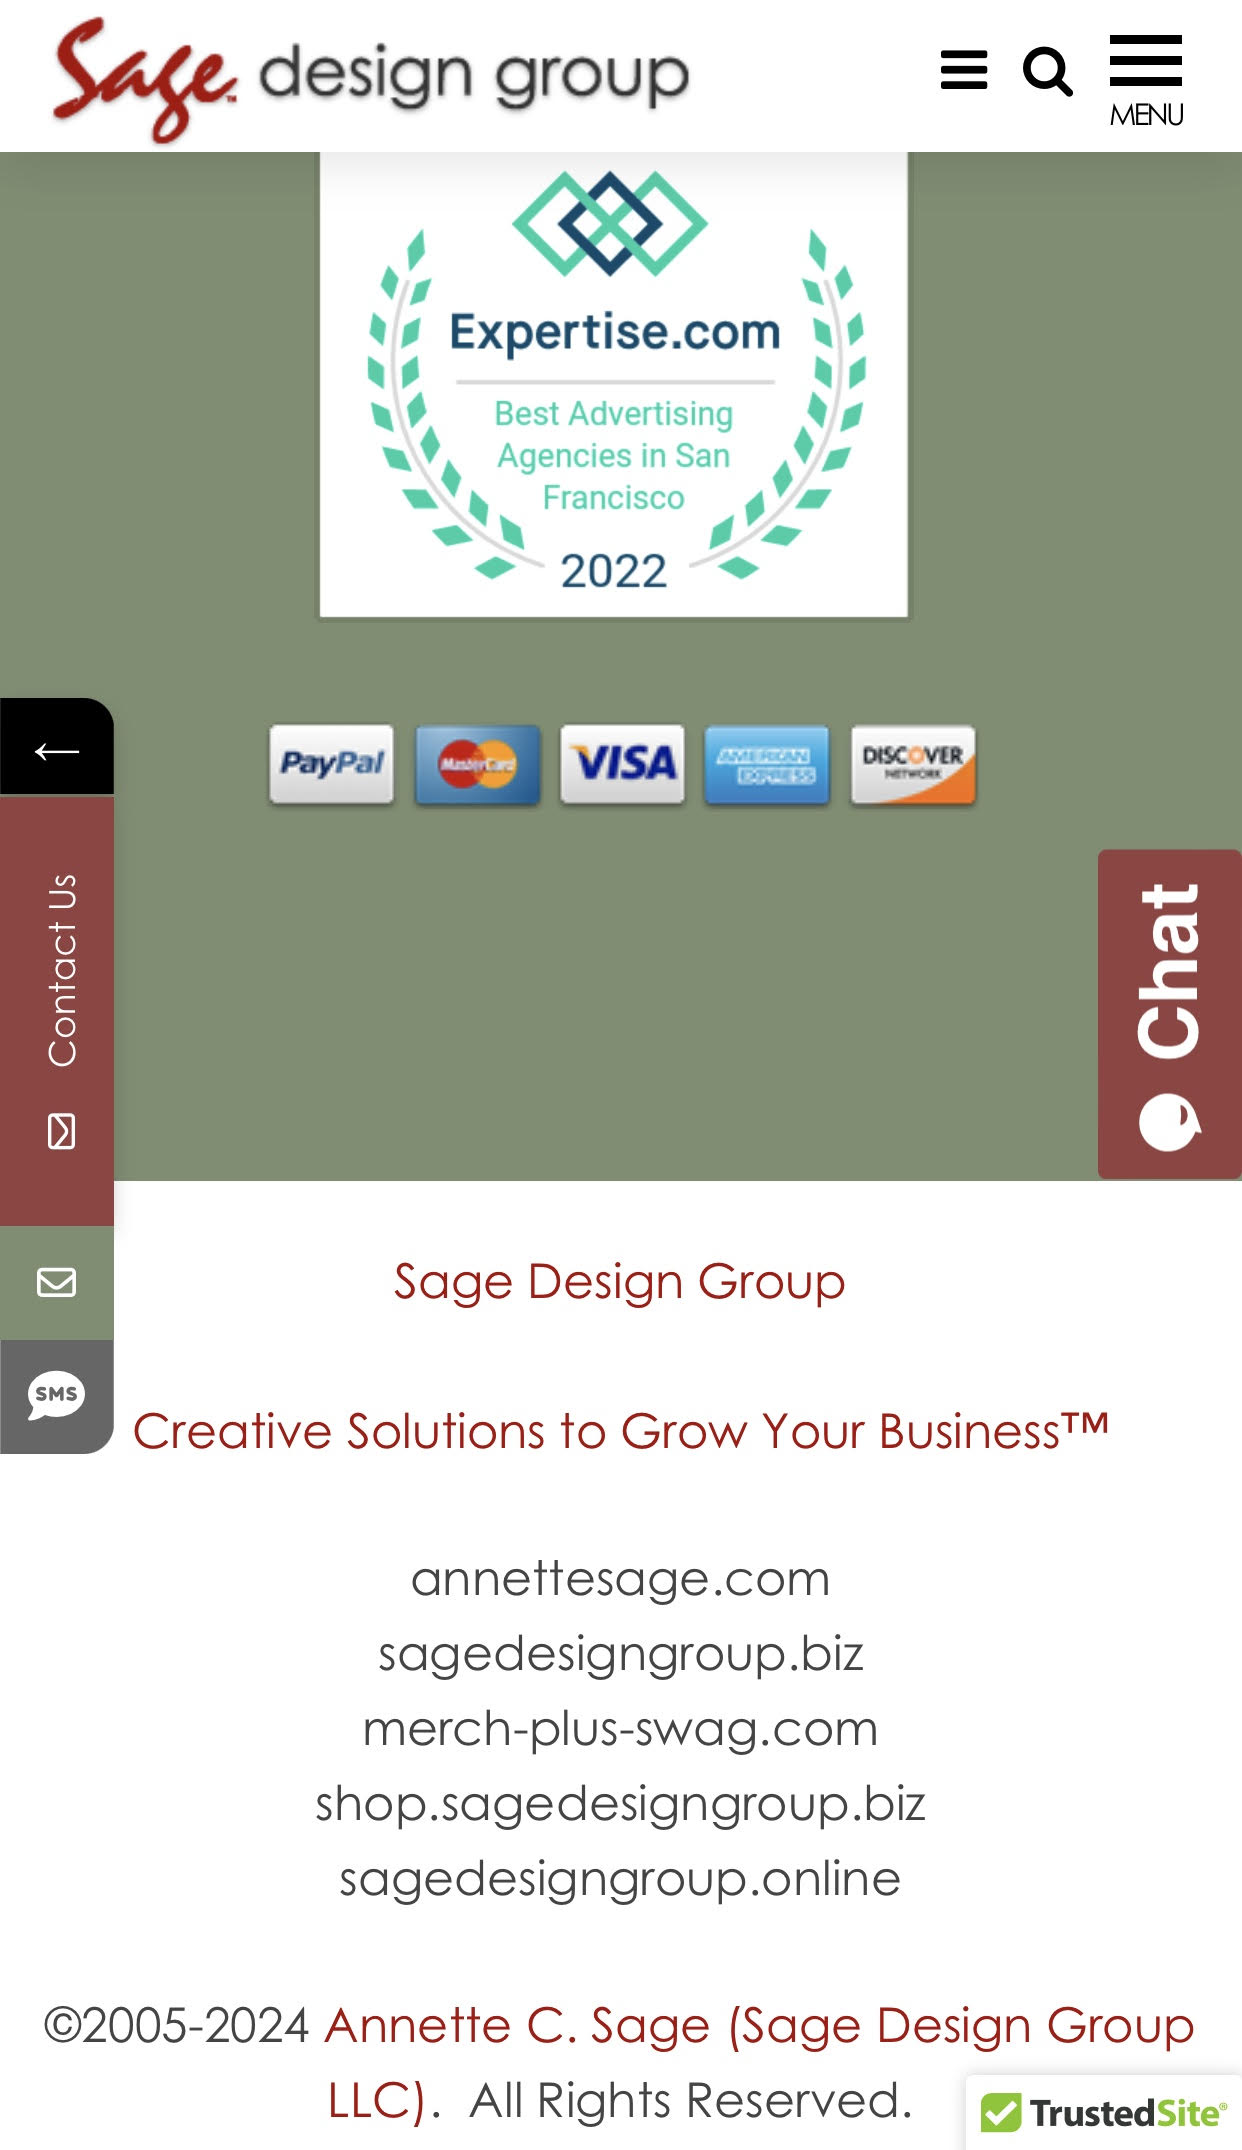 Sage Design Group Mobile App - Sage Design Group Website Design and Development - Annette Sage, CEO - Web Designer